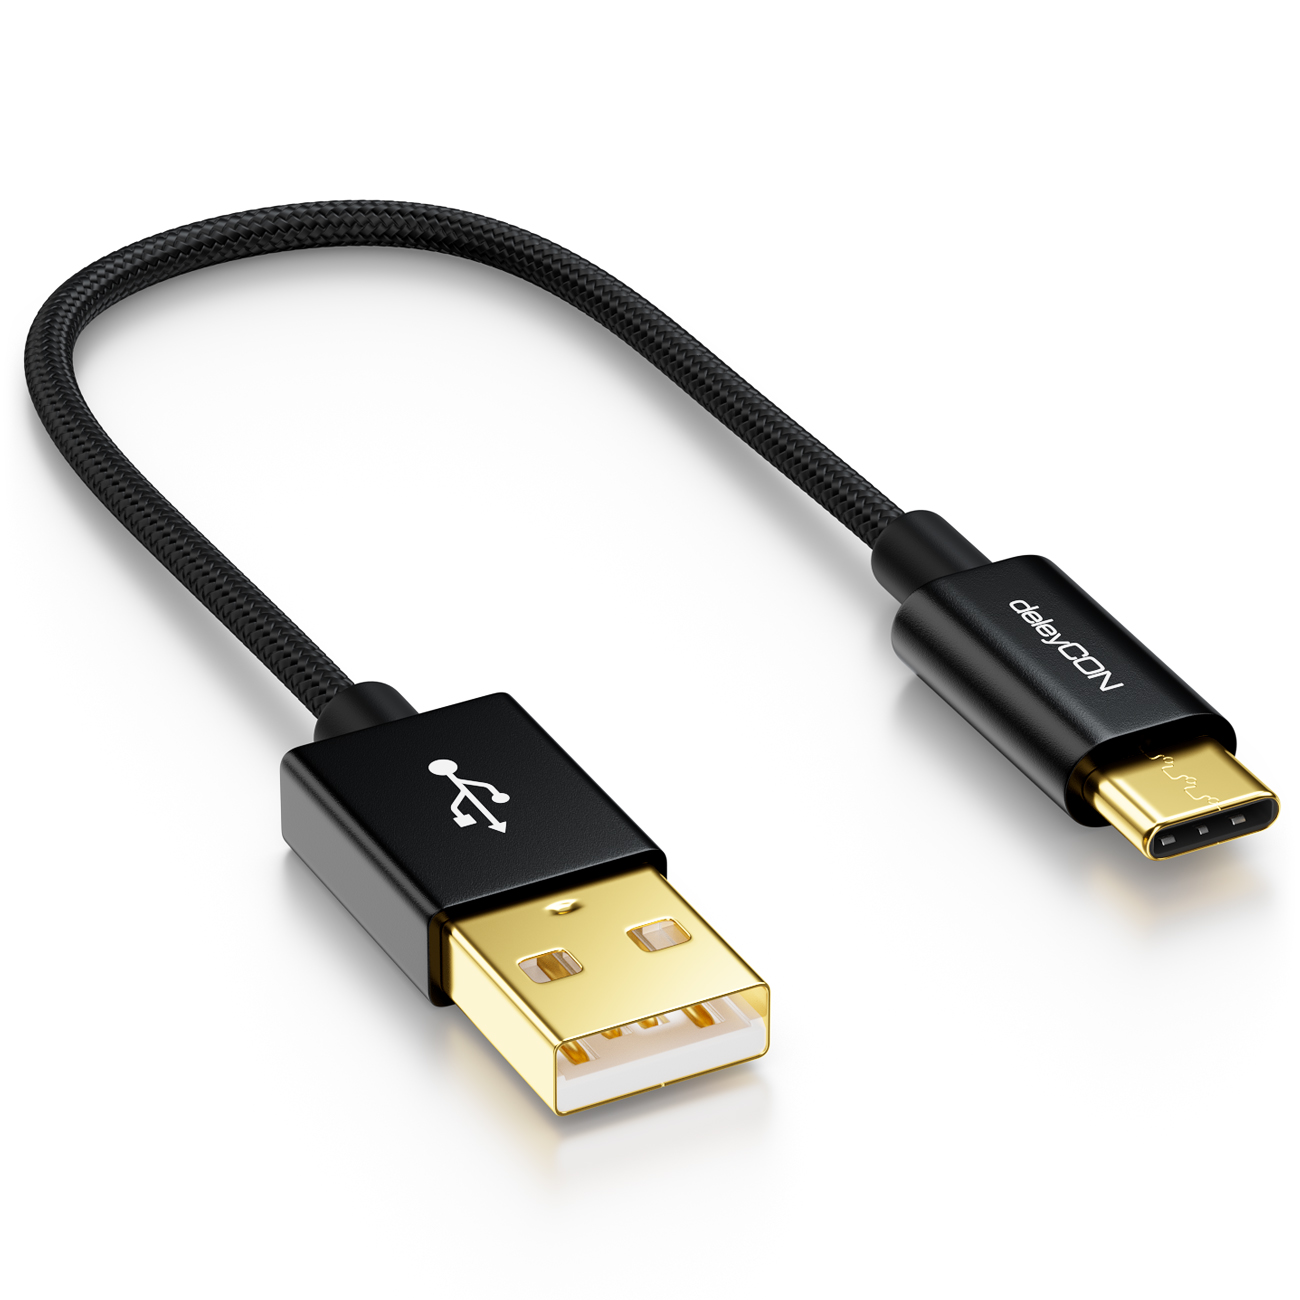 Braided geflochtenes Kabel USB auf USB Typ C Ladekabel Goldstecker 5m Nylon USB 3.0 Typ C Kabel schwarz Datenkabel